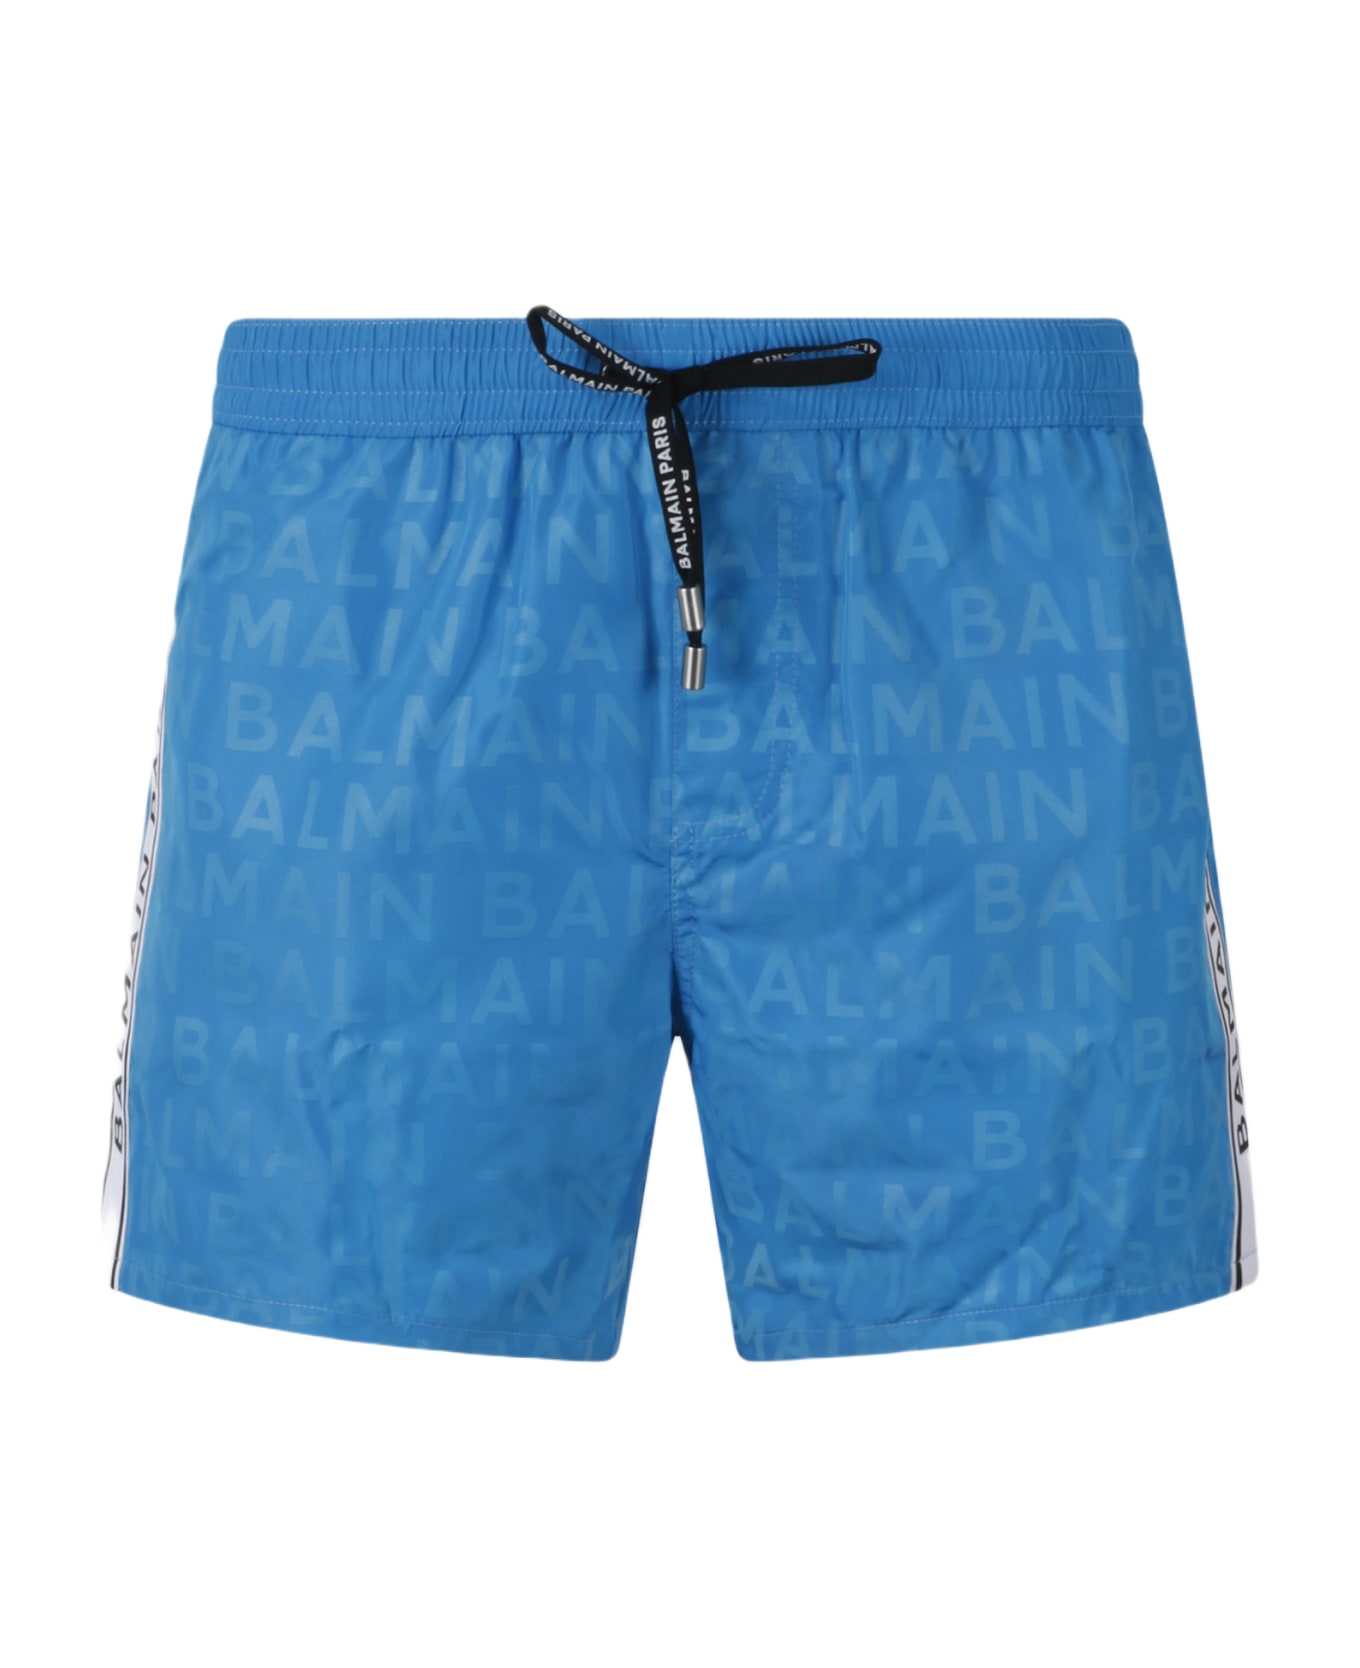 Balmain Logo Swim Shorts - Blue